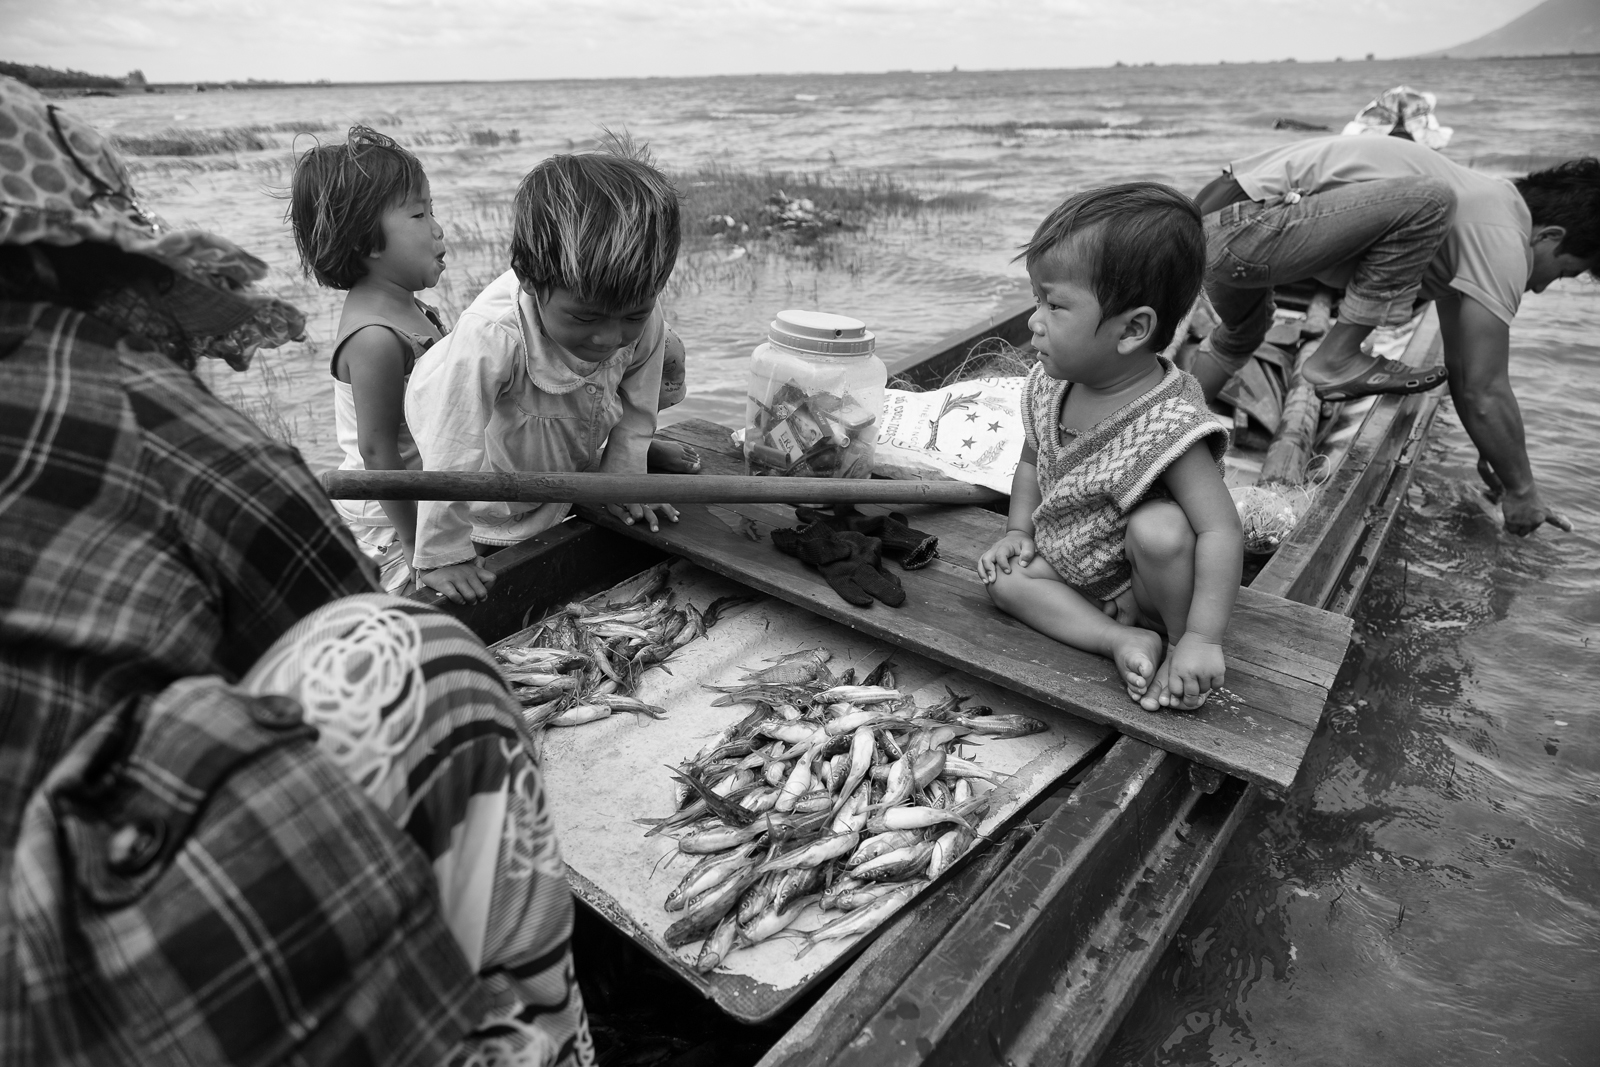 
Rất nhiều Việt kiều hồi hương để đánh bắt cá trong hồ Dầu Tiếng khiến nghề này ngày càng thất thu
